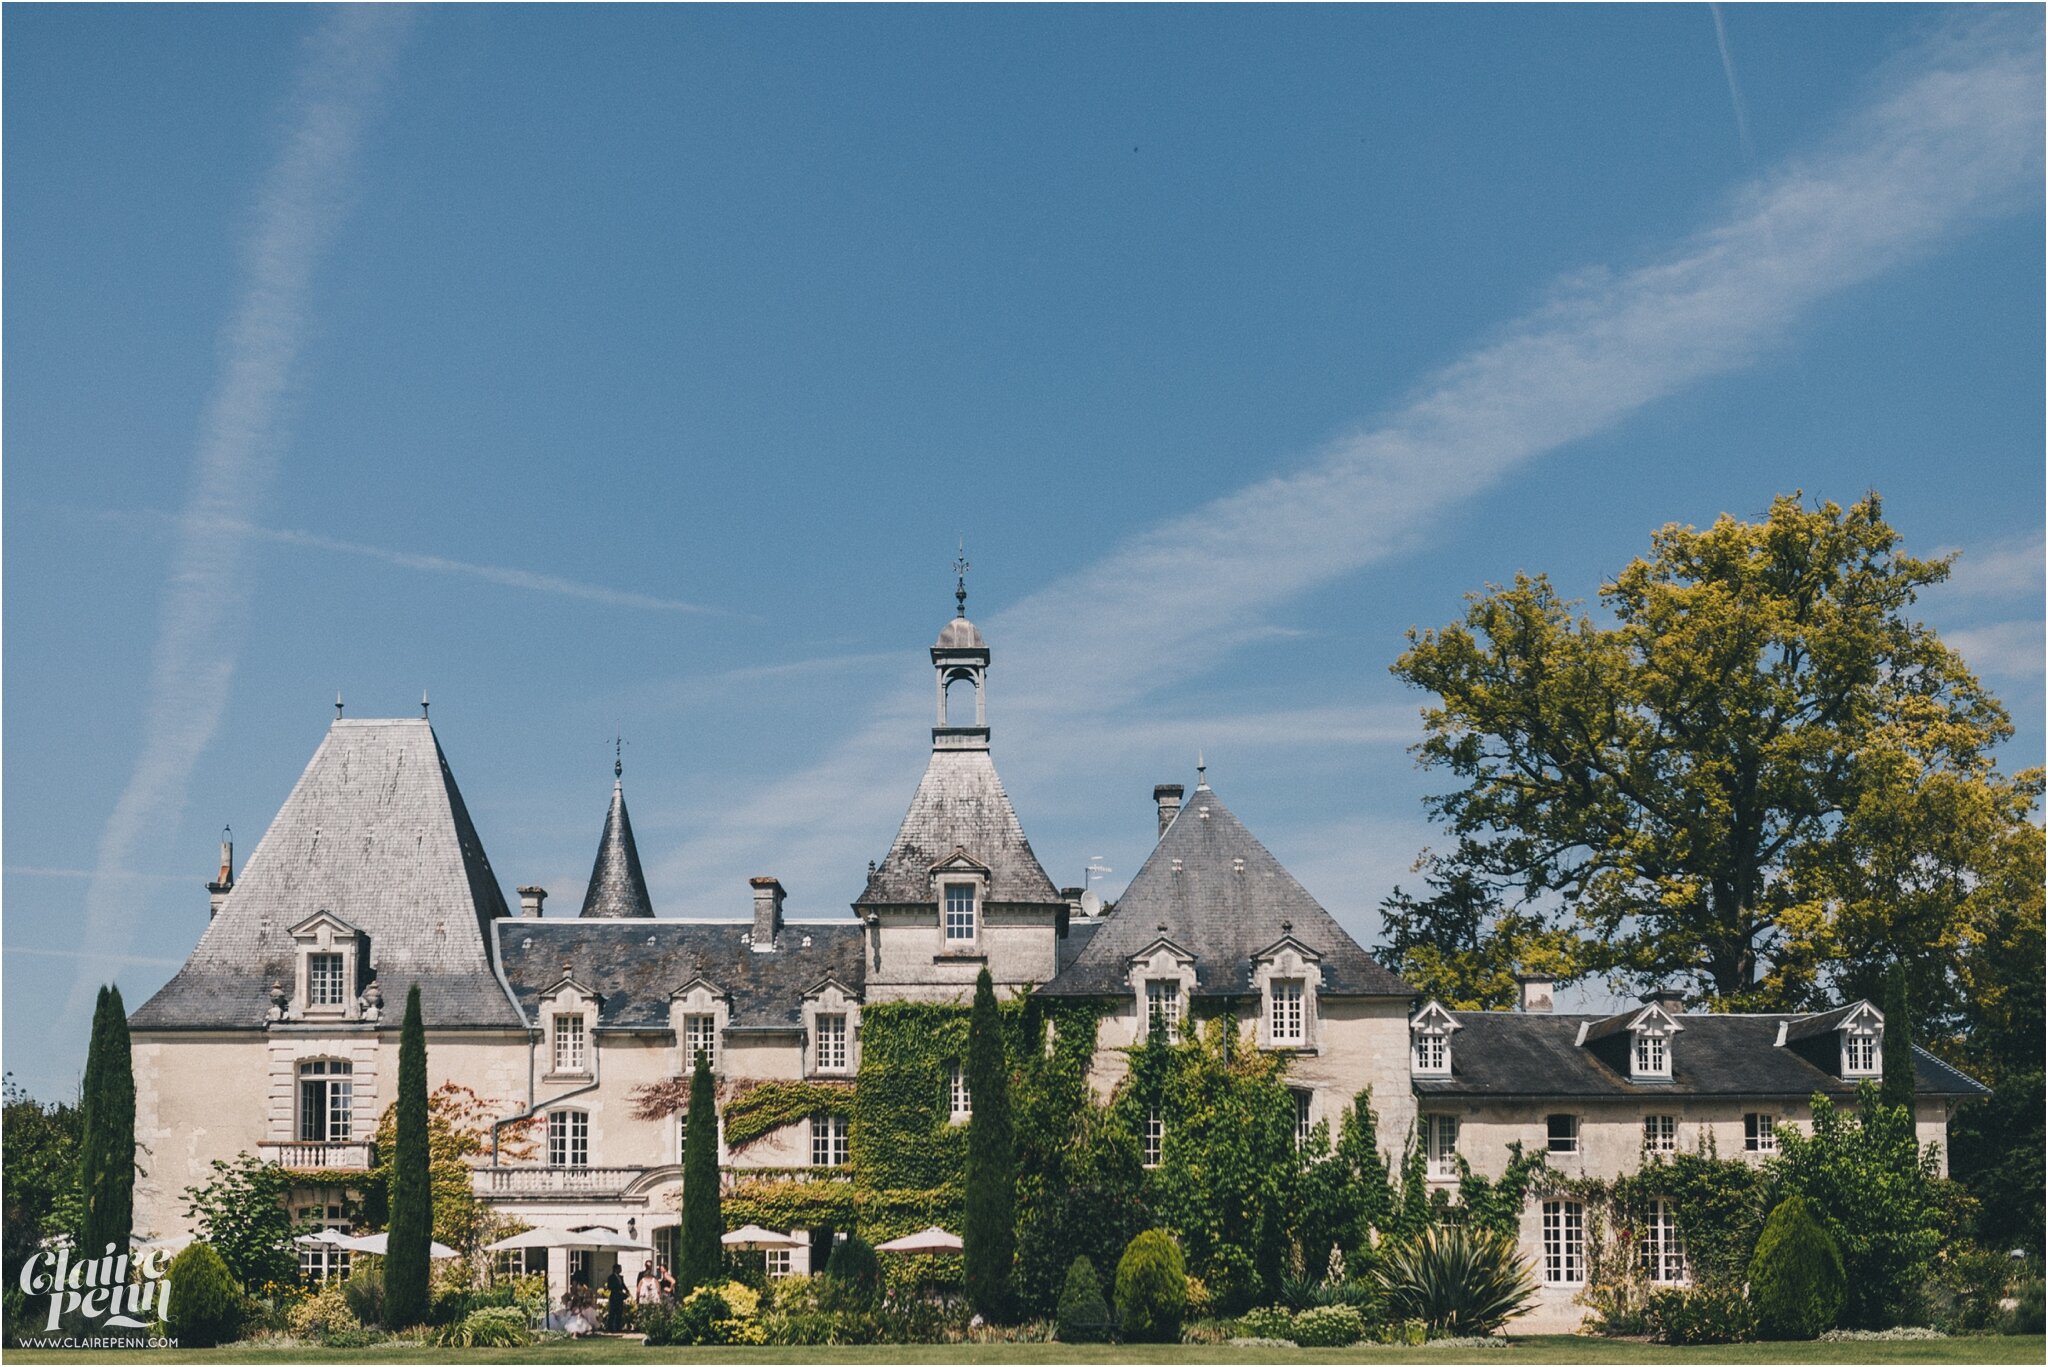 Le-Chateau-Charmant-wedding-Dordogne-France_0001.jpg